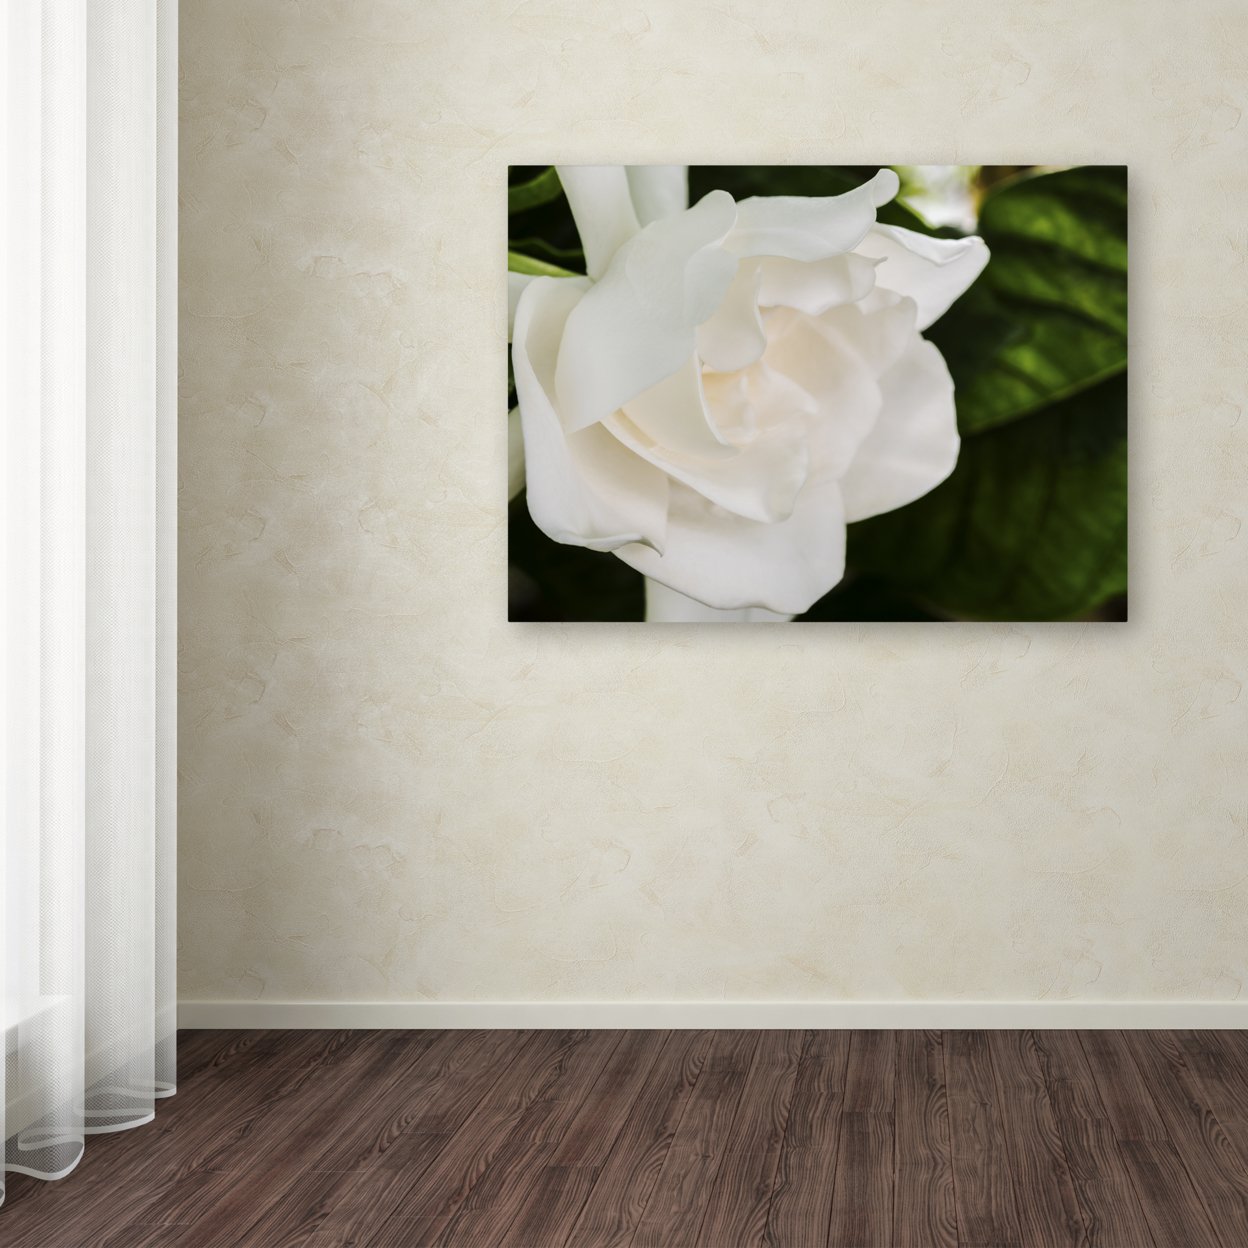 Kurt Shaffer 'Gardenia' Canvas Art 18 X 24